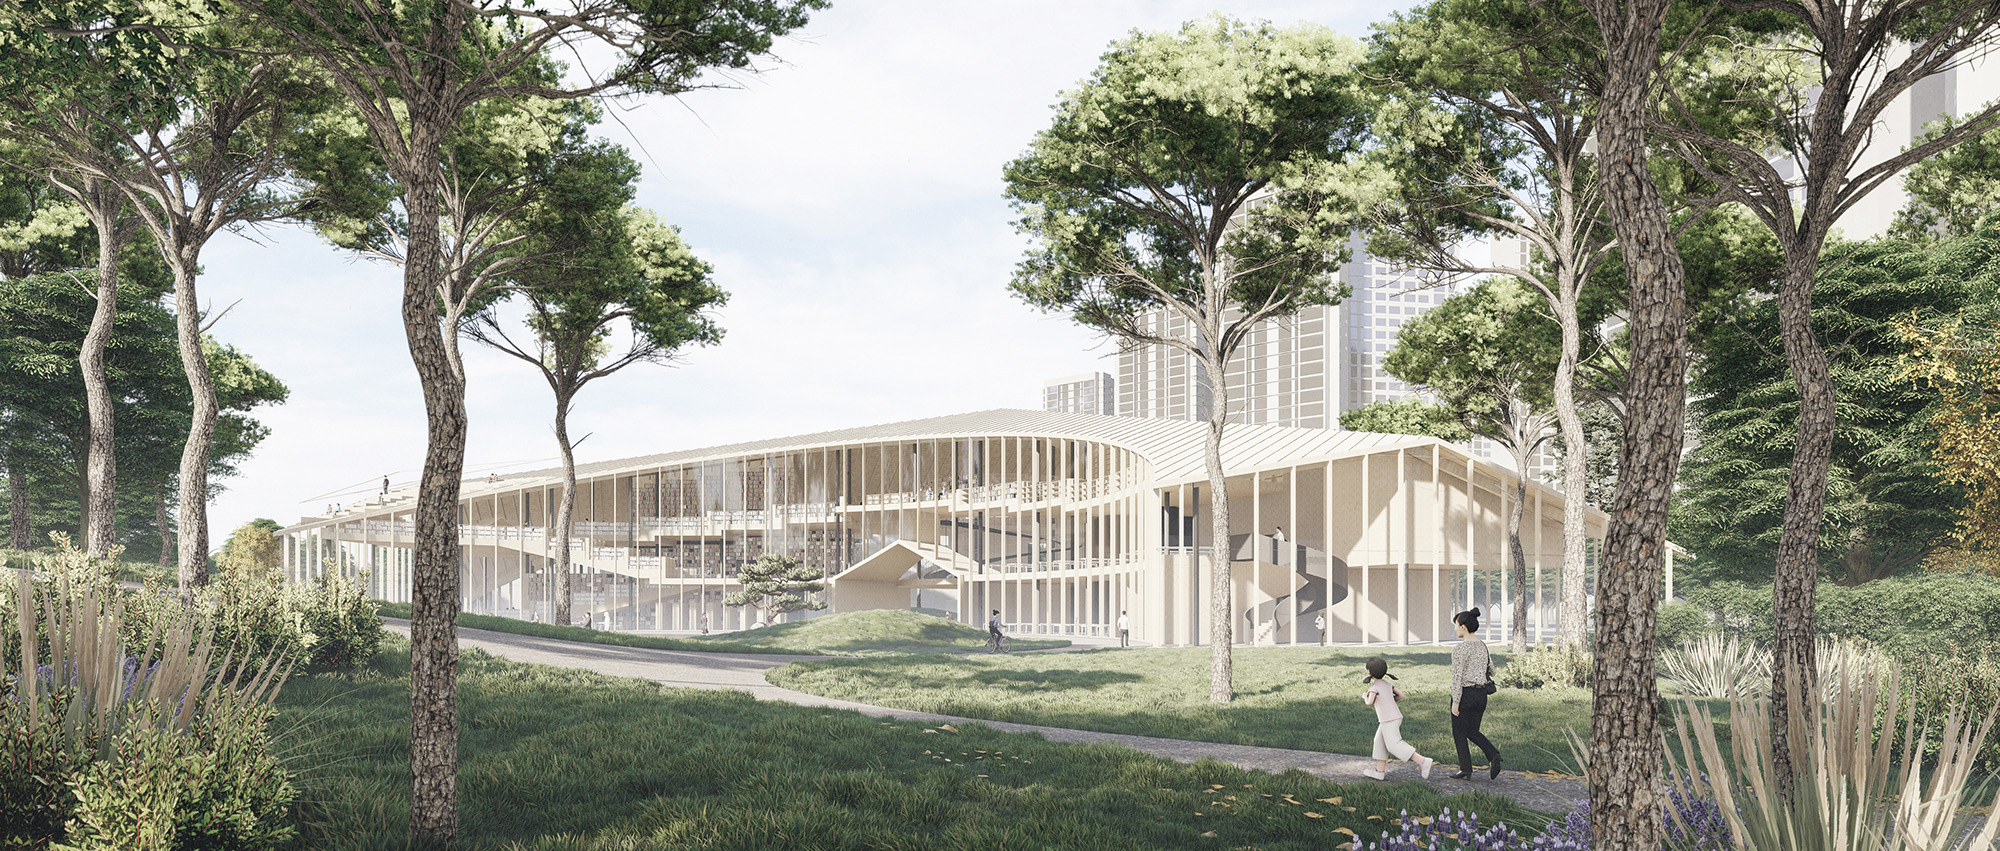 松岛书屋：松岛国际城图书馆国际设计竞赛荣誉提名